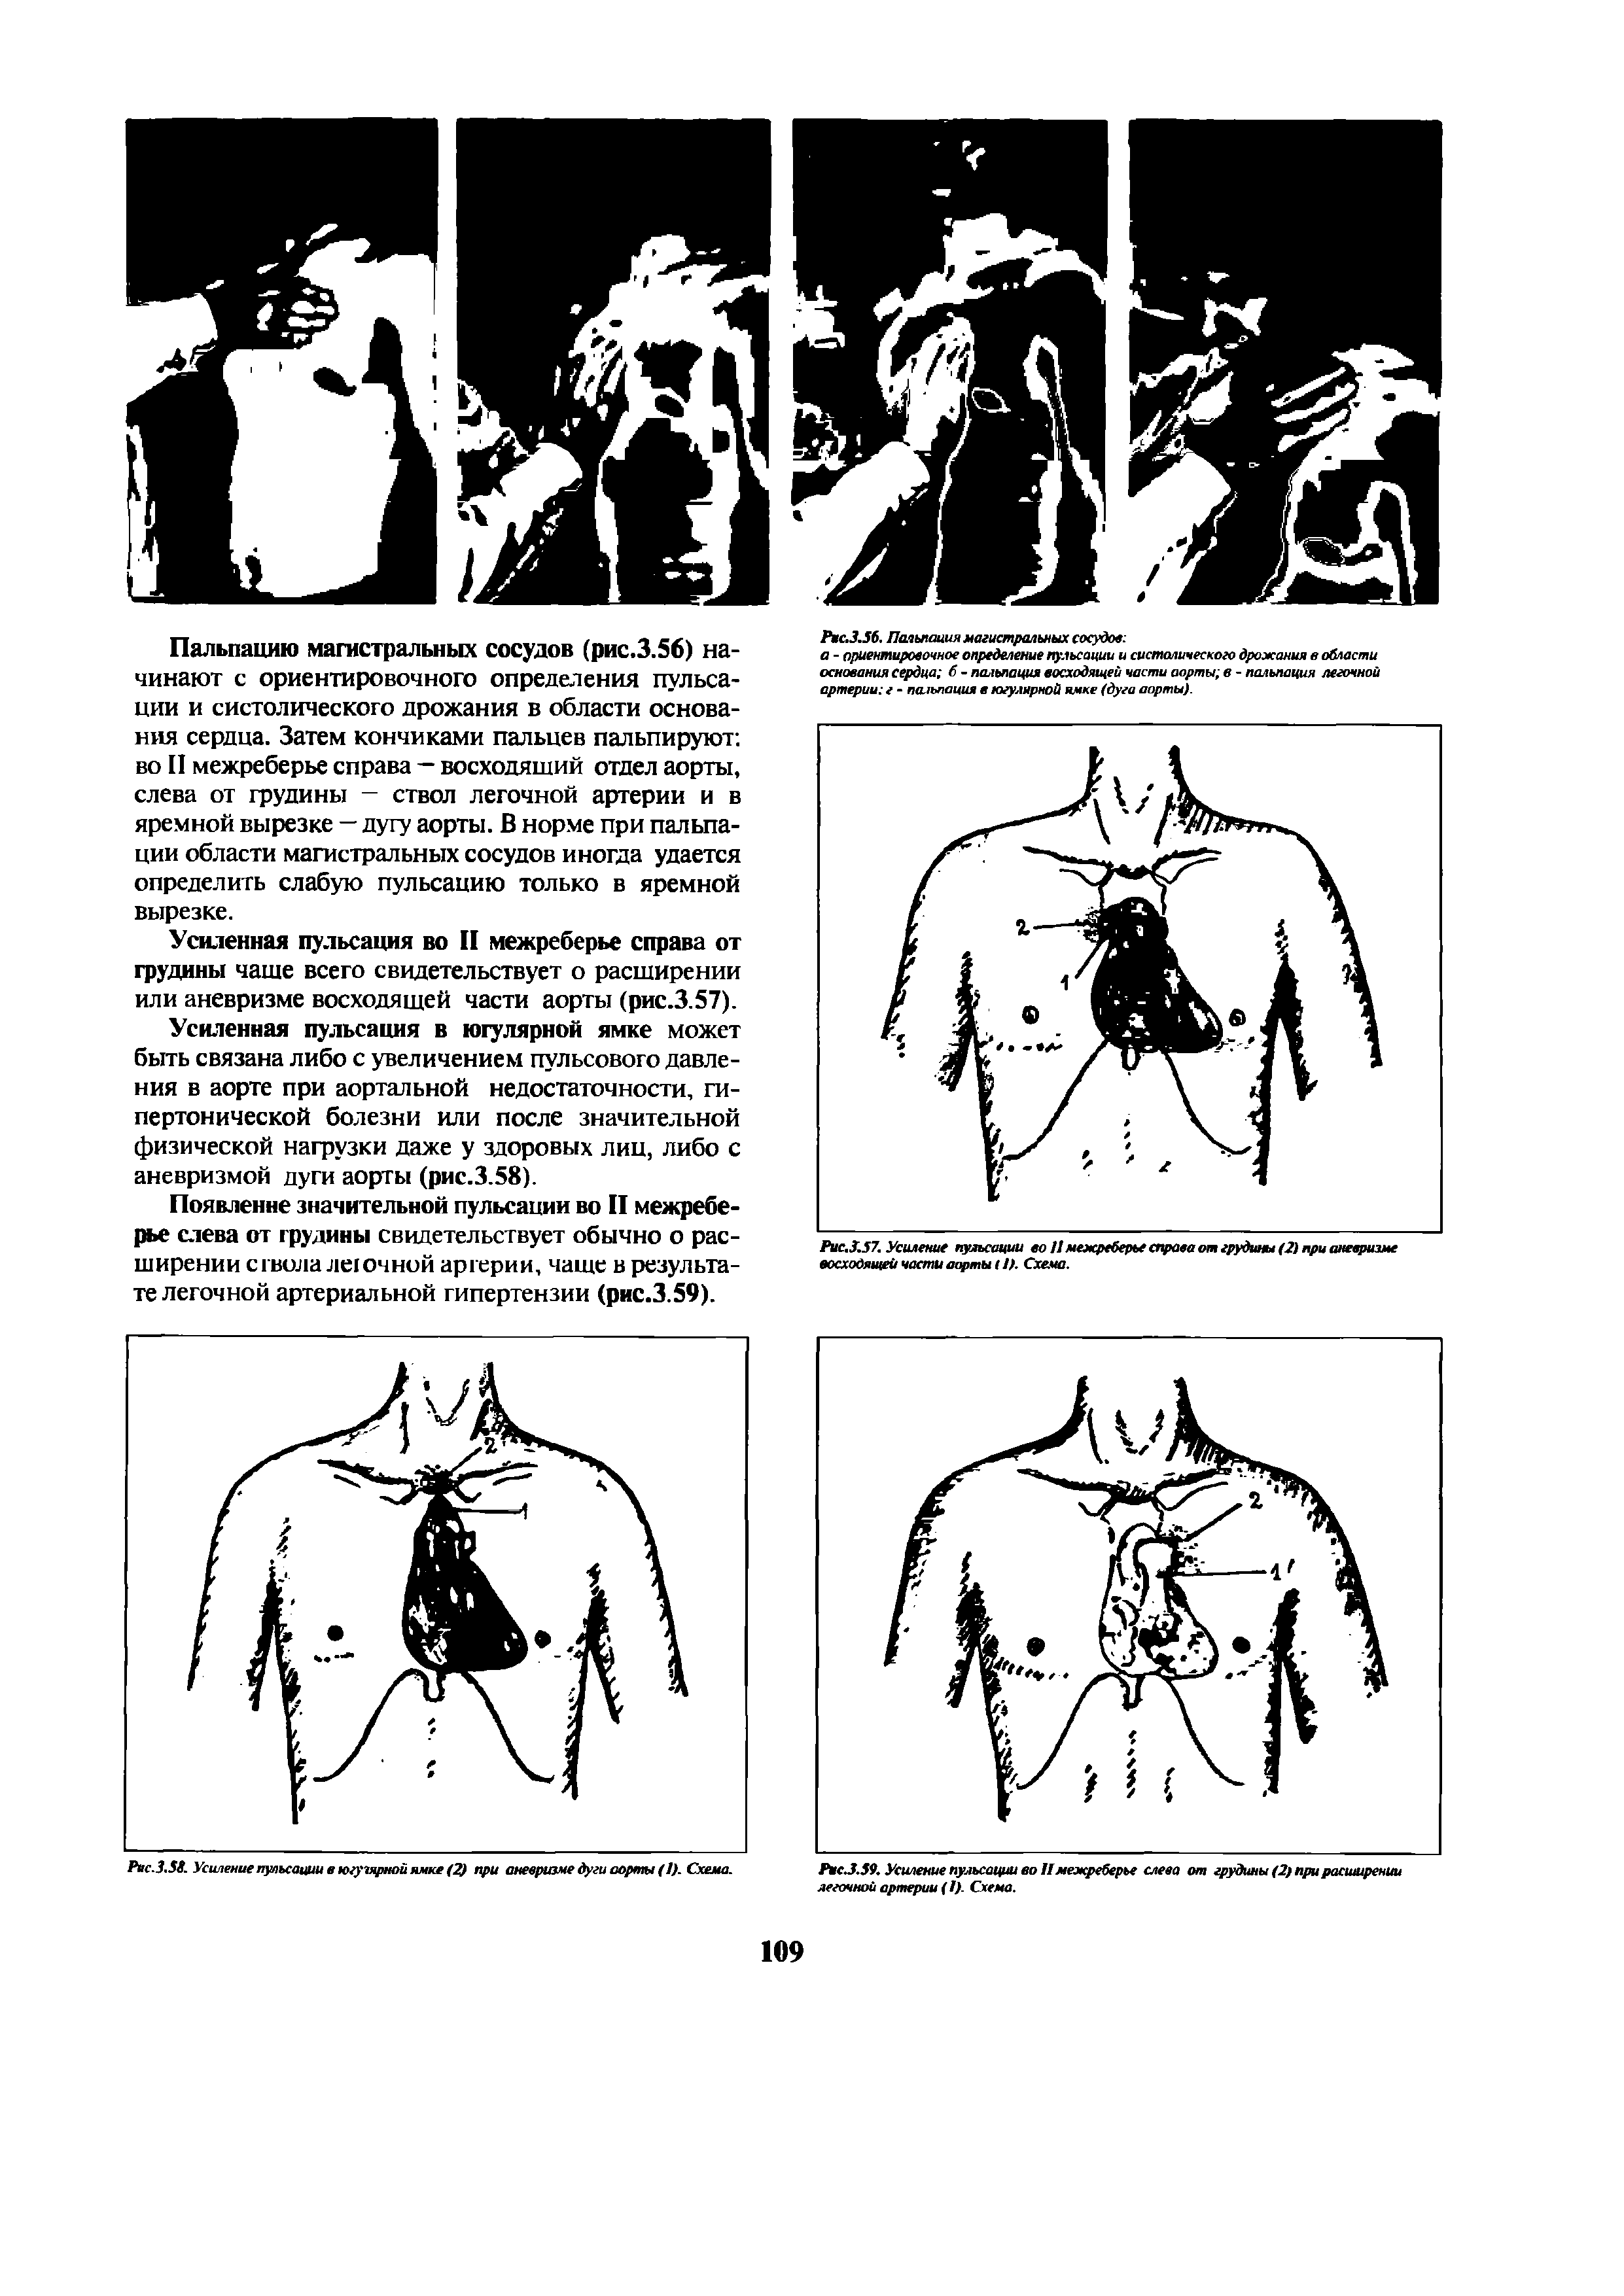 Рис.3.57. Усиление пульсации во 11 межреберье справа от грудины (2) при аневризме восходящей части аорты <1). Схема.